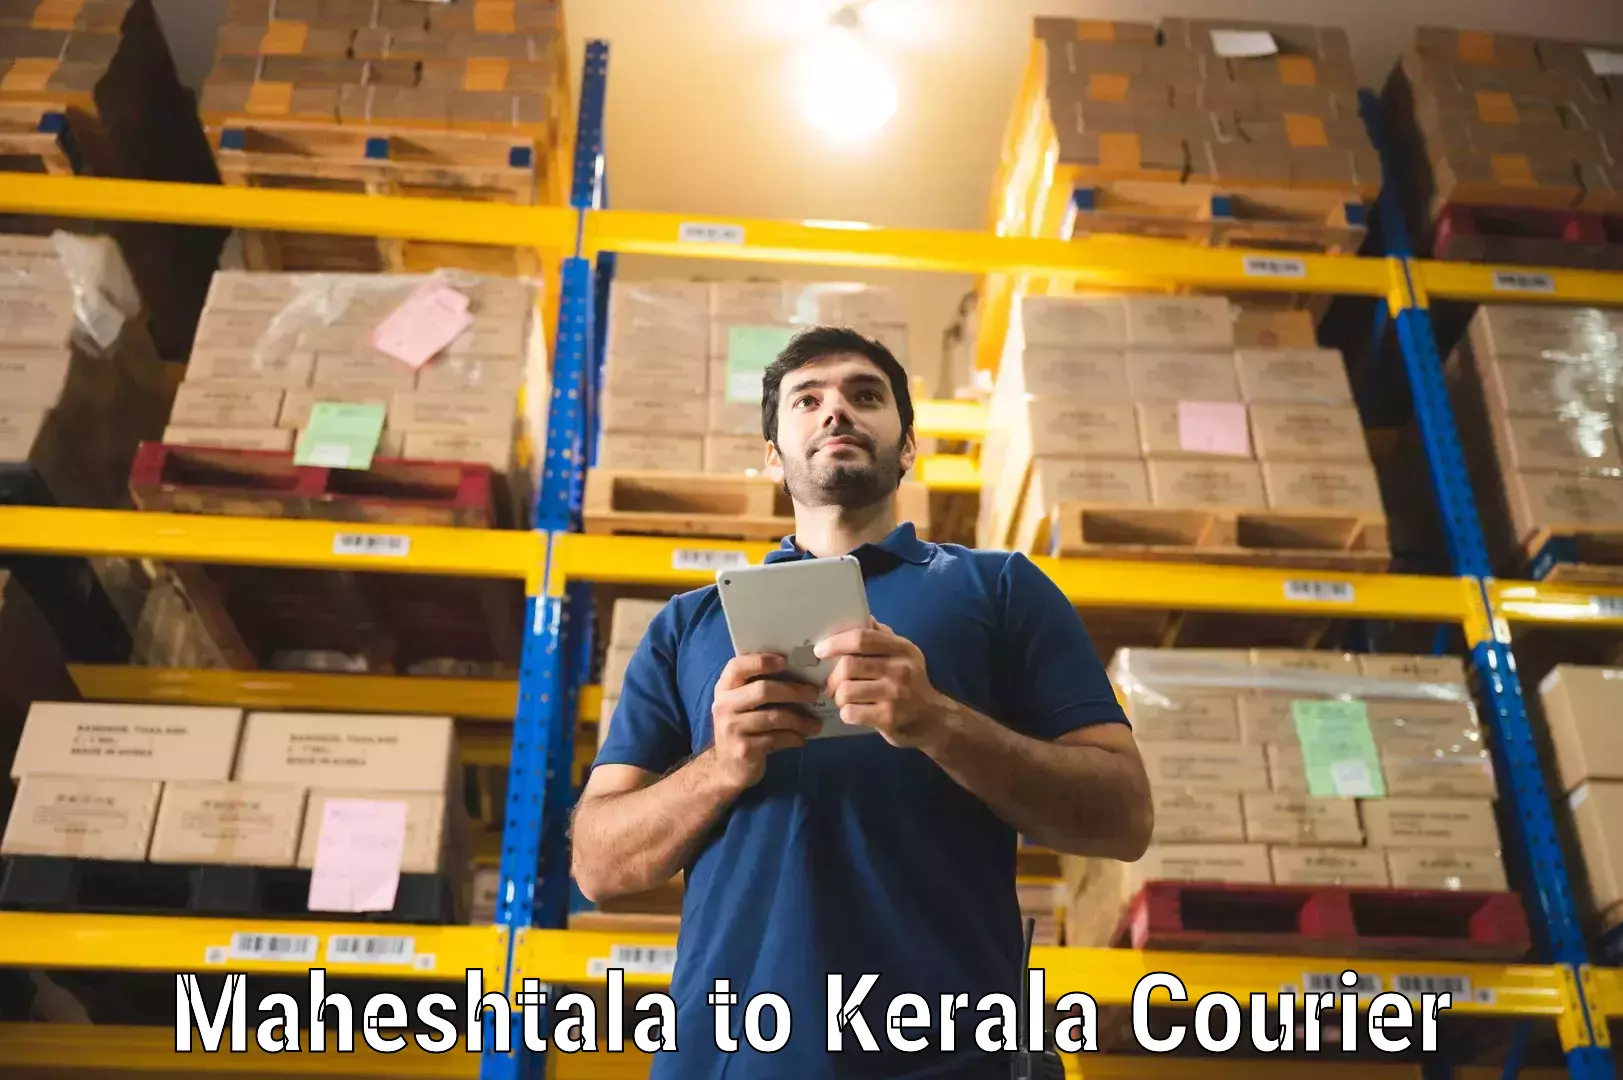 Urban courier service Maheshtala to Kerala